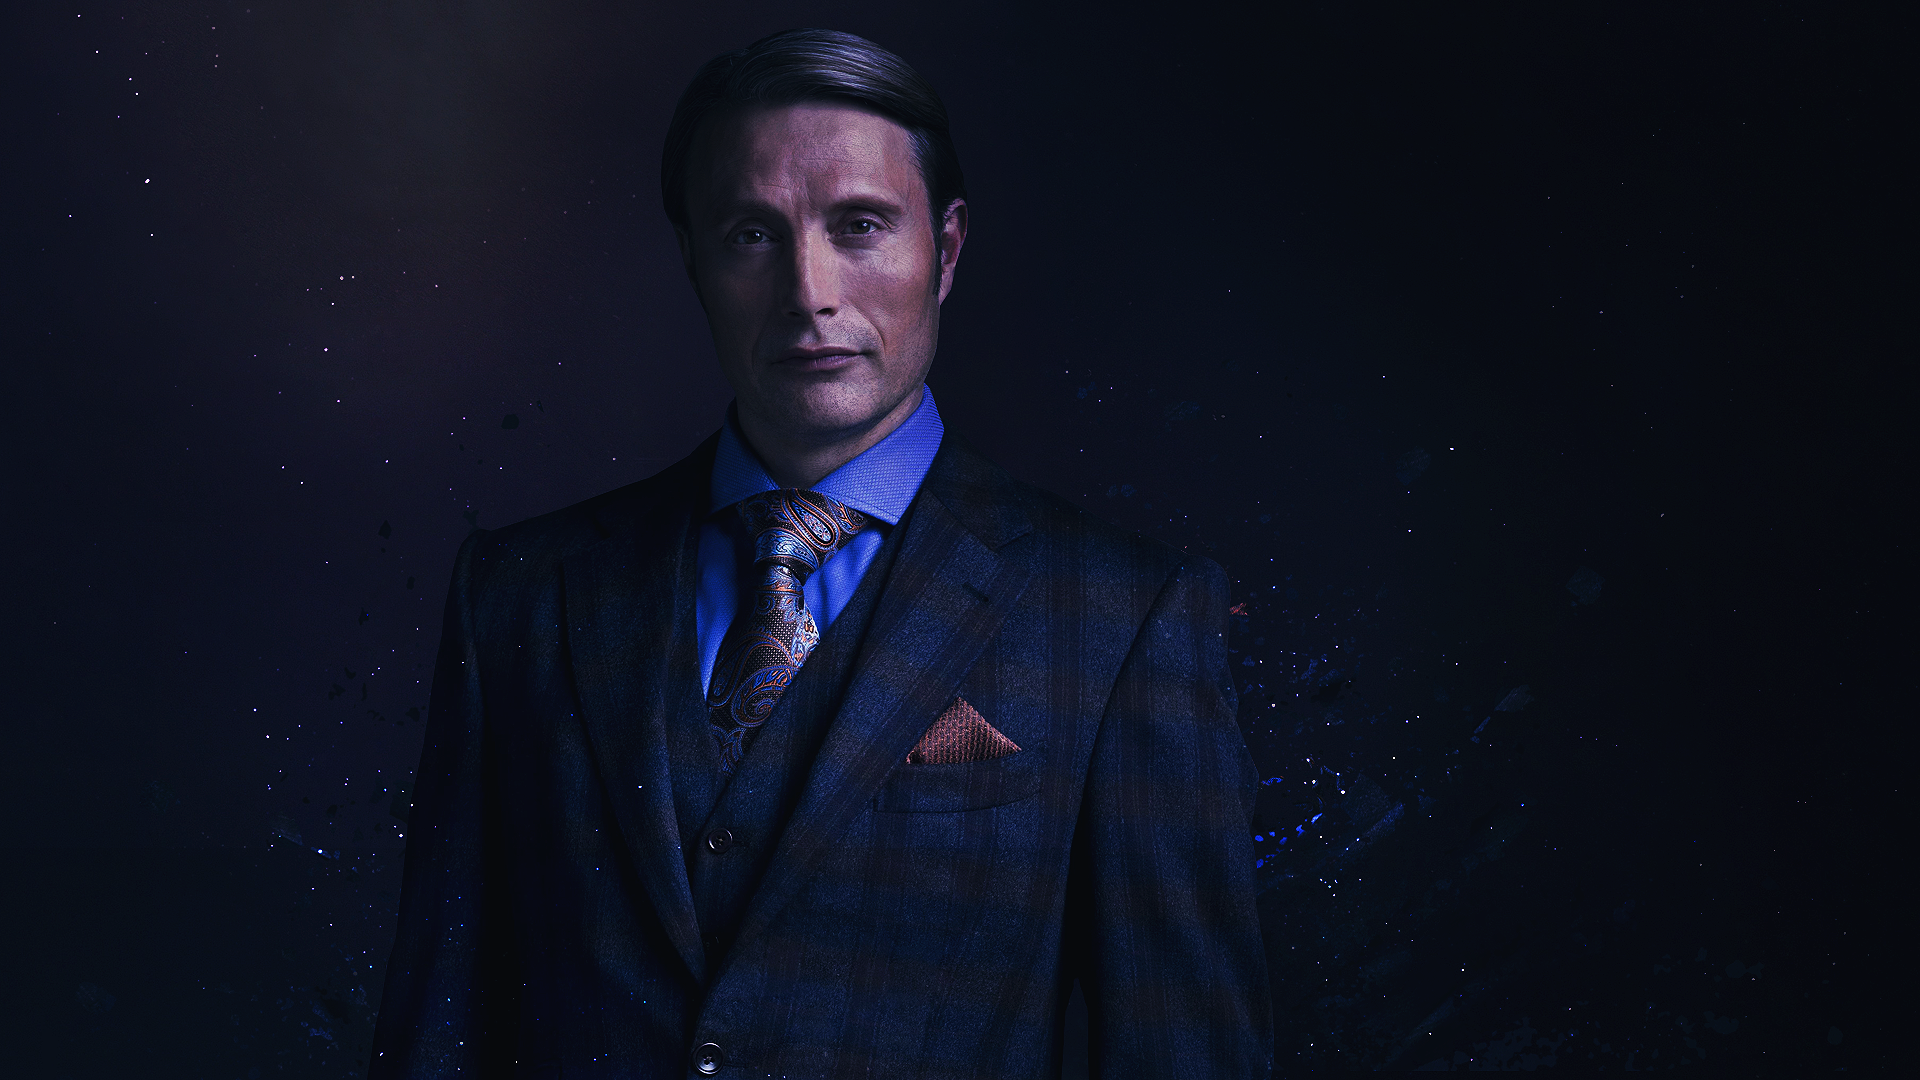 General 1920x1080 Hannibal NBC Mads Mikkelsen Hannibal Lecter men suits tie TV series actor